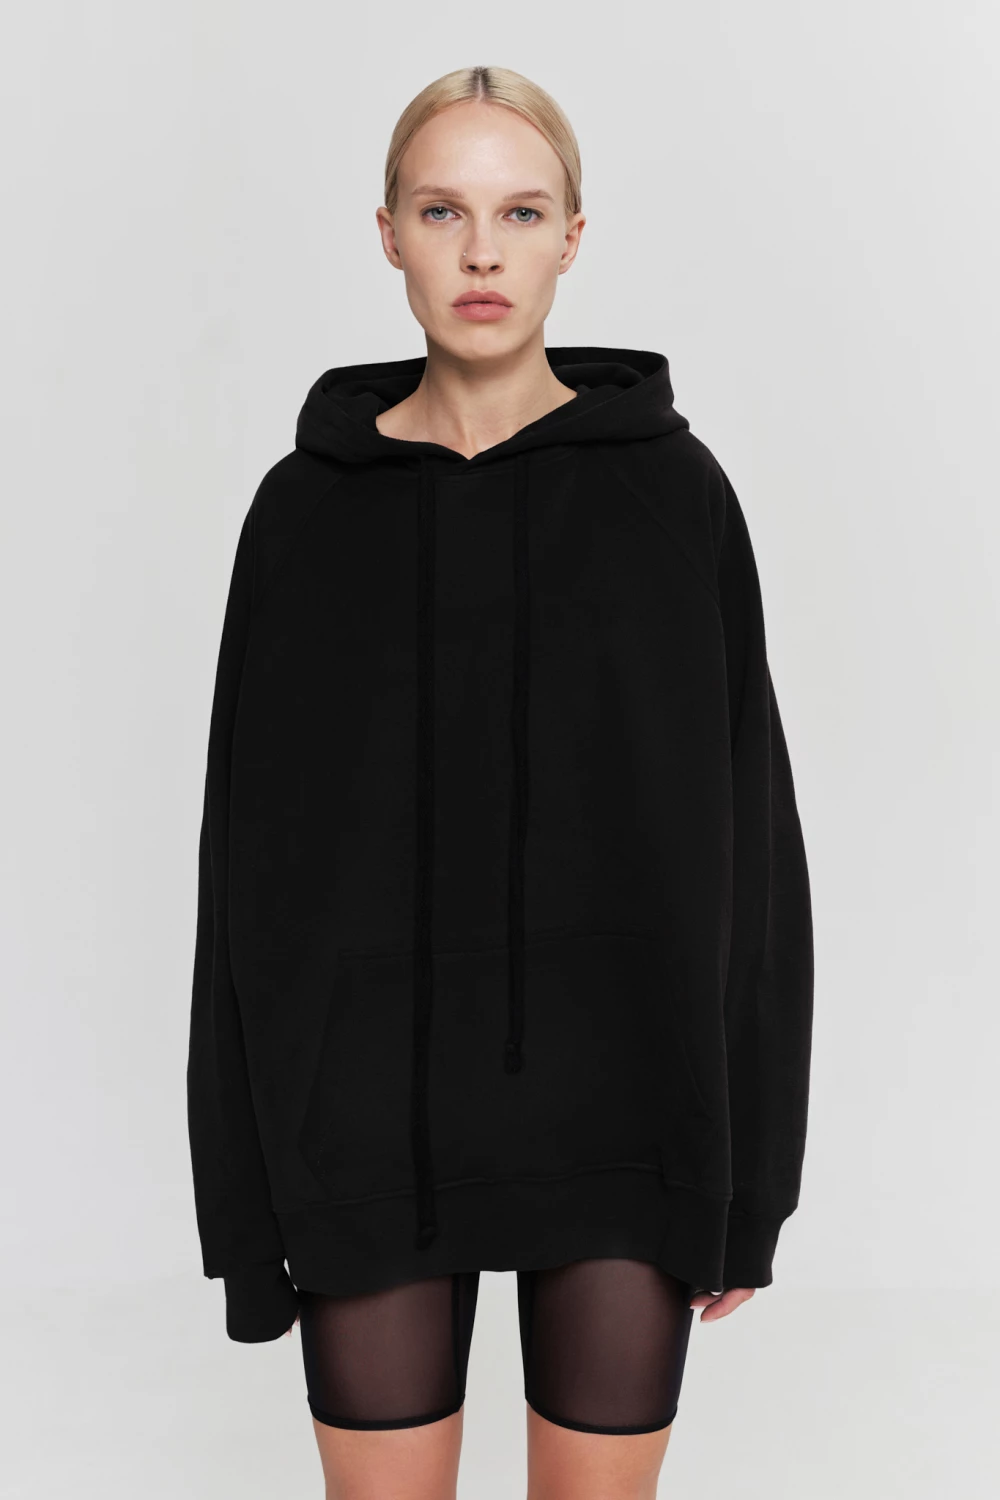 hoodie "sex idol" in black color